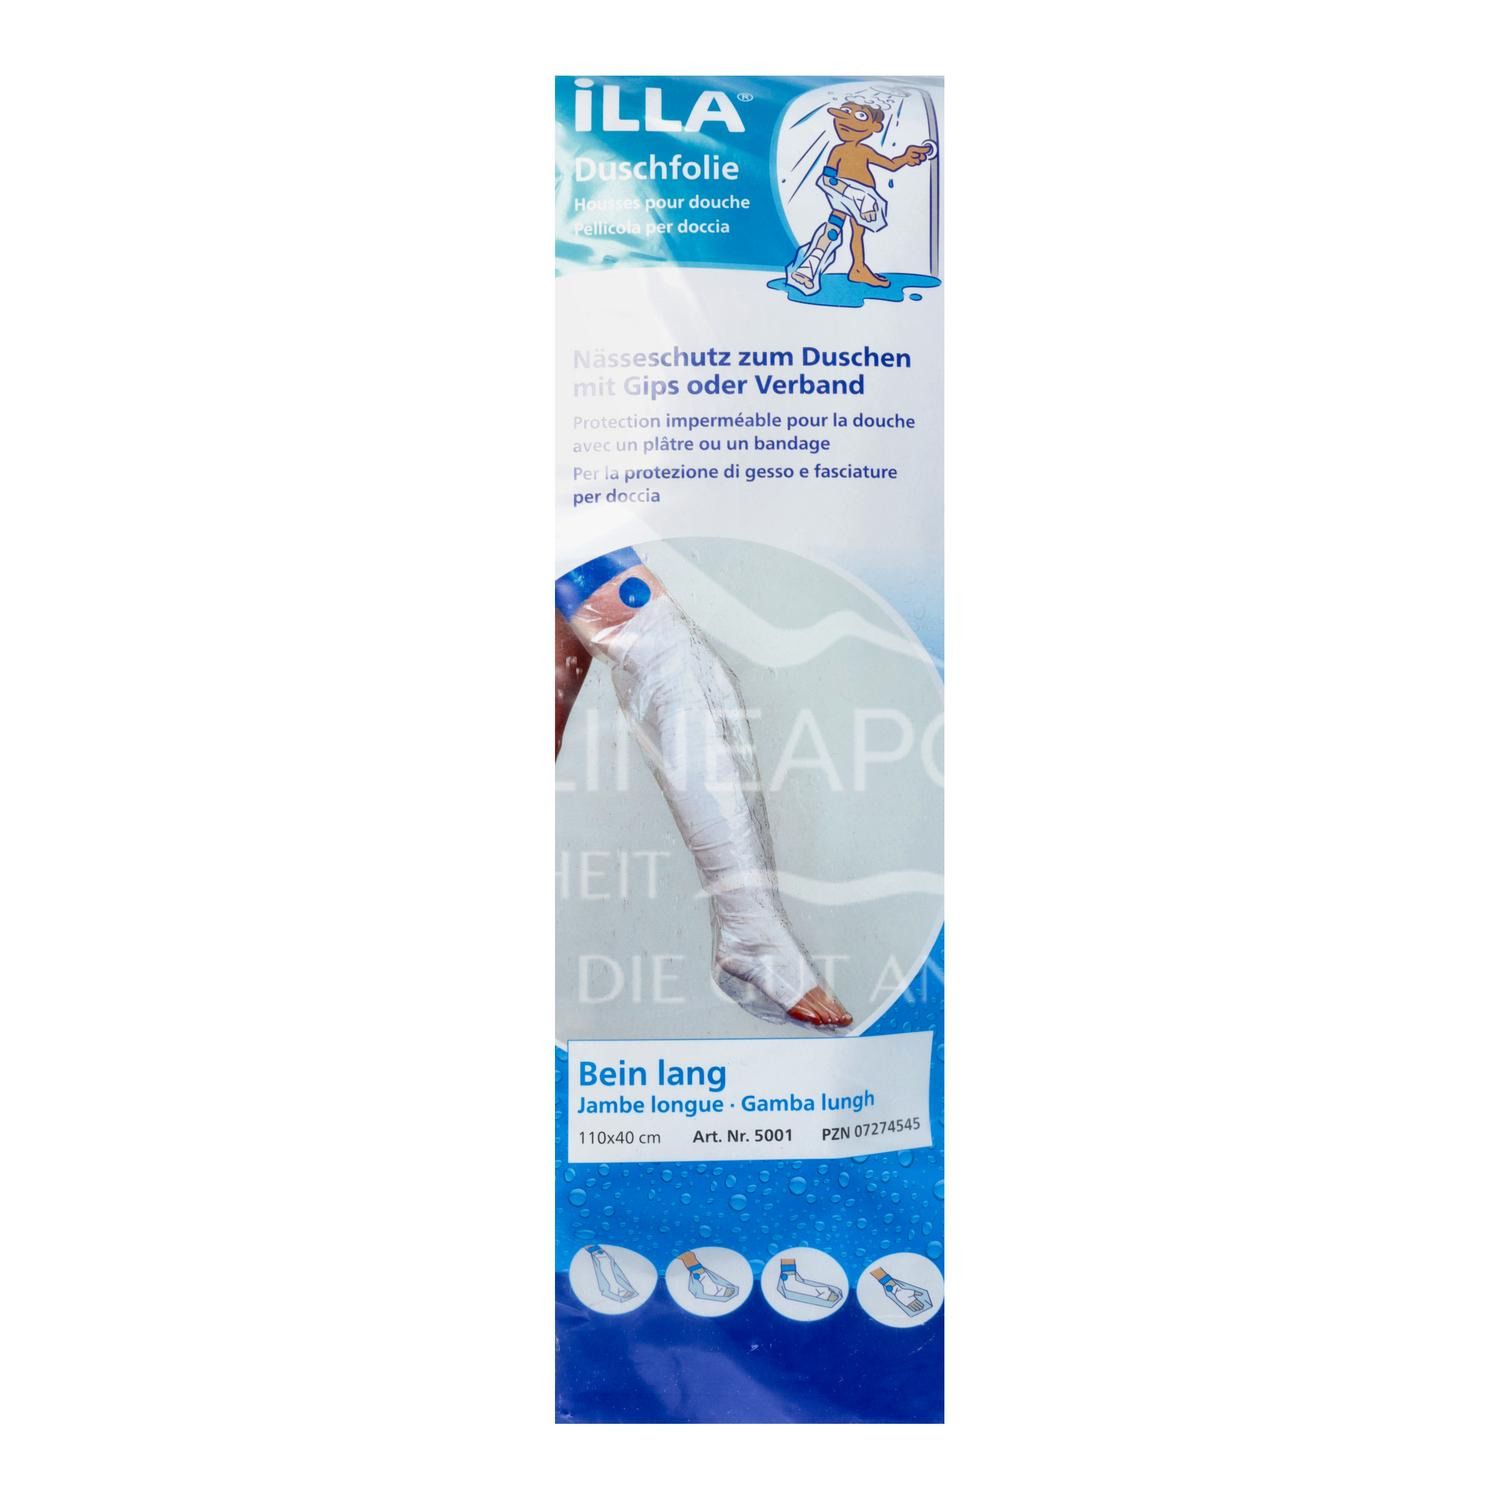 ILLA® Duschschutzfolien Bein lang 110 x 40 cm